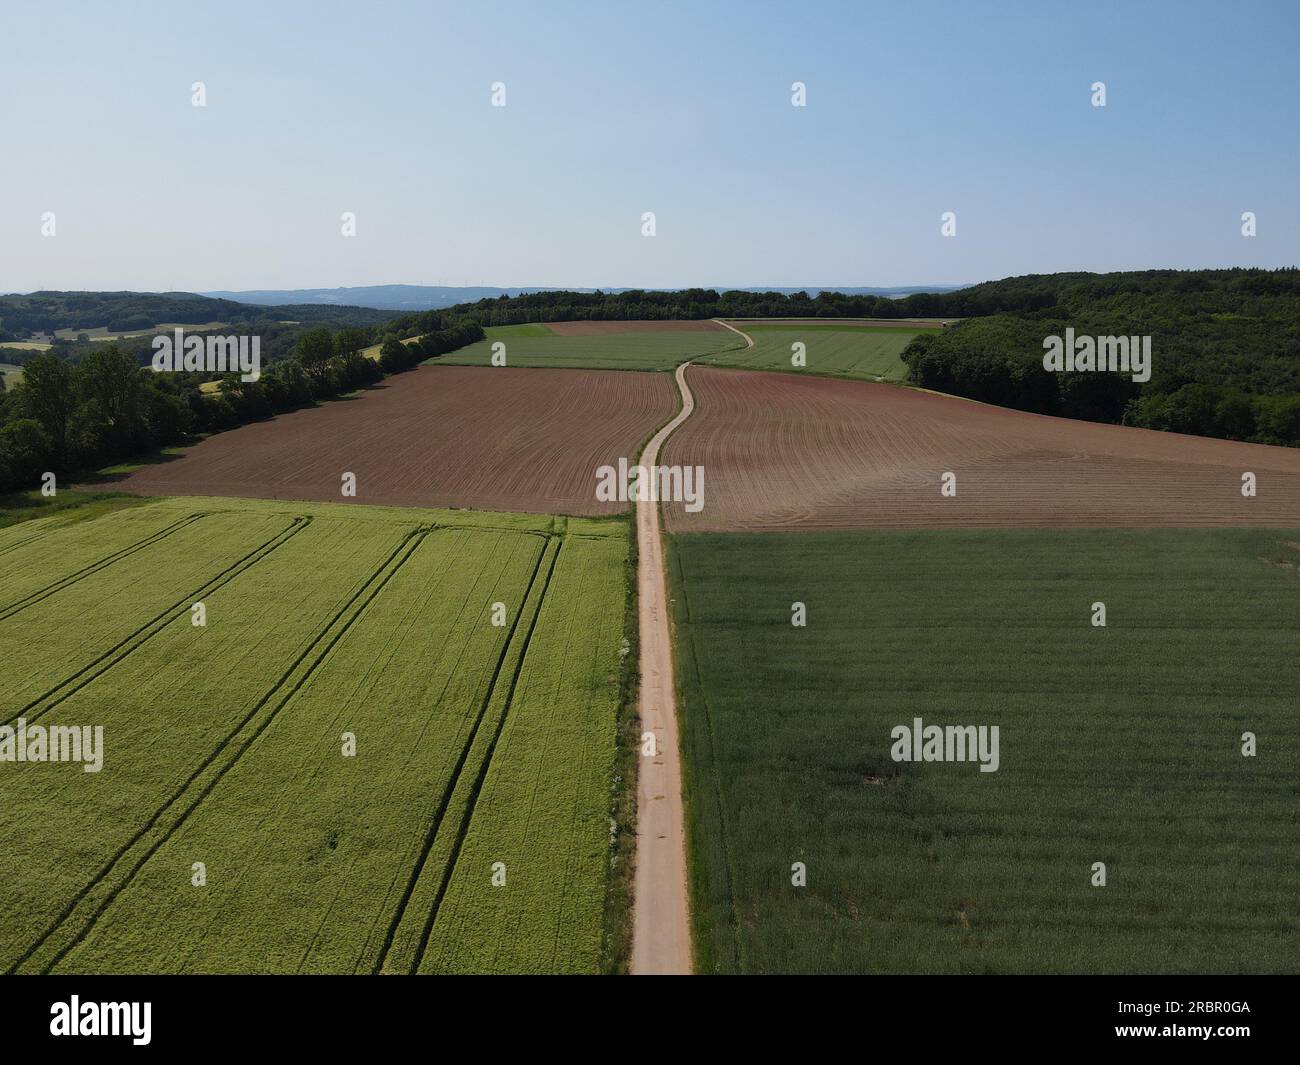 Vista droni della terra agricola con campi coltivati verdi, campi arati con terreno, alberi e un lungo percorso di trattori in una giornata di sole con cielo blu in S. Foto Stock